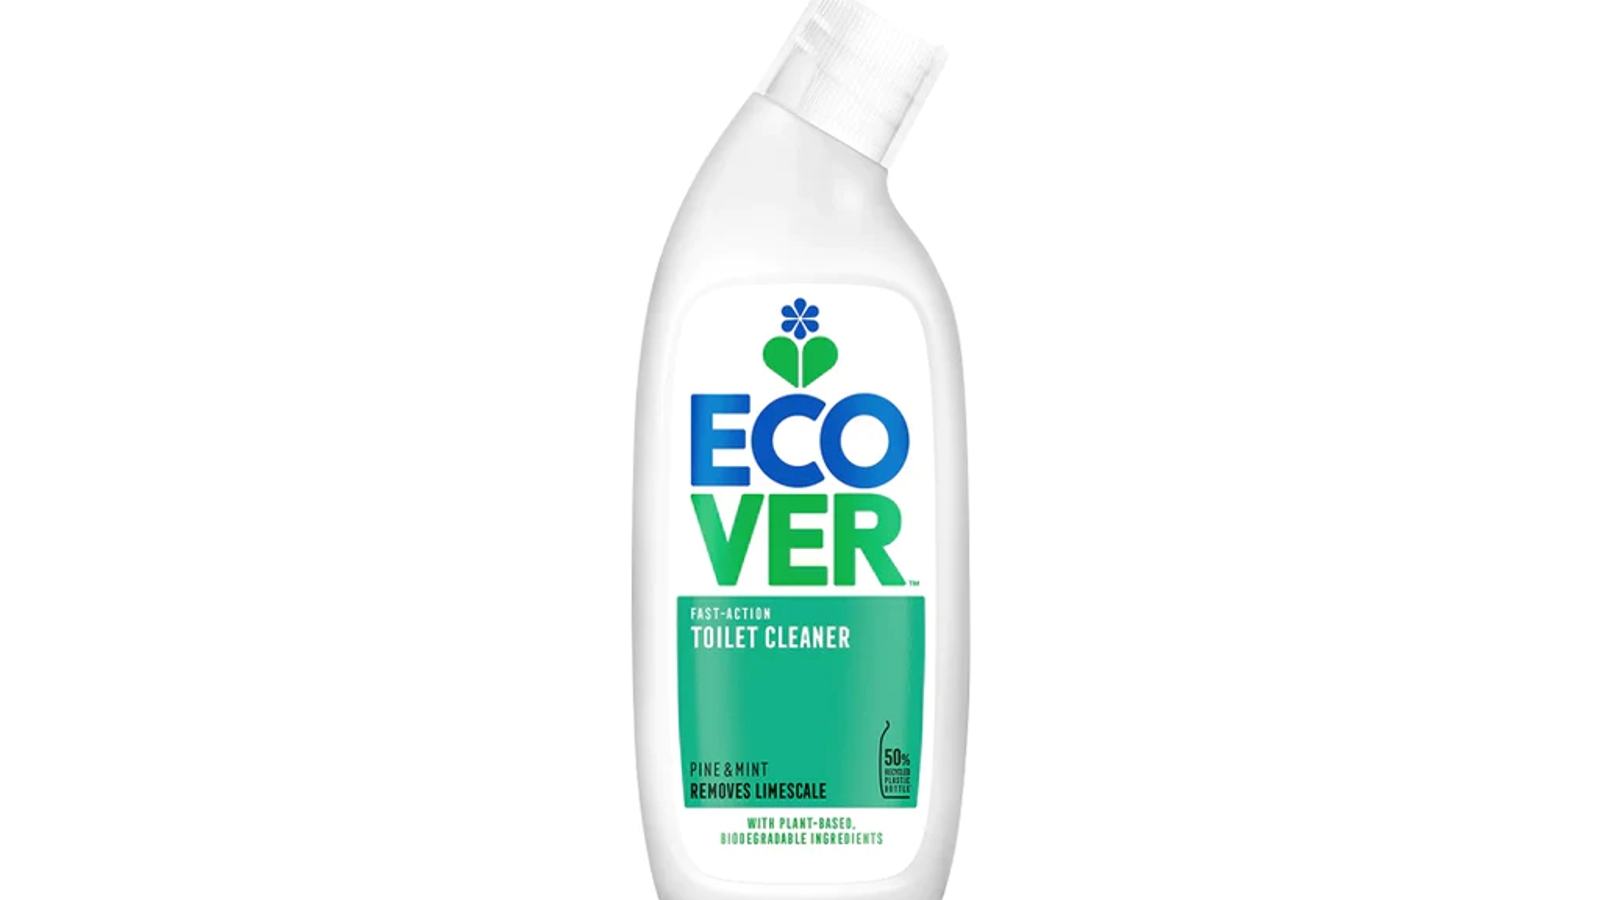 Ecover toilet cleaner bottle